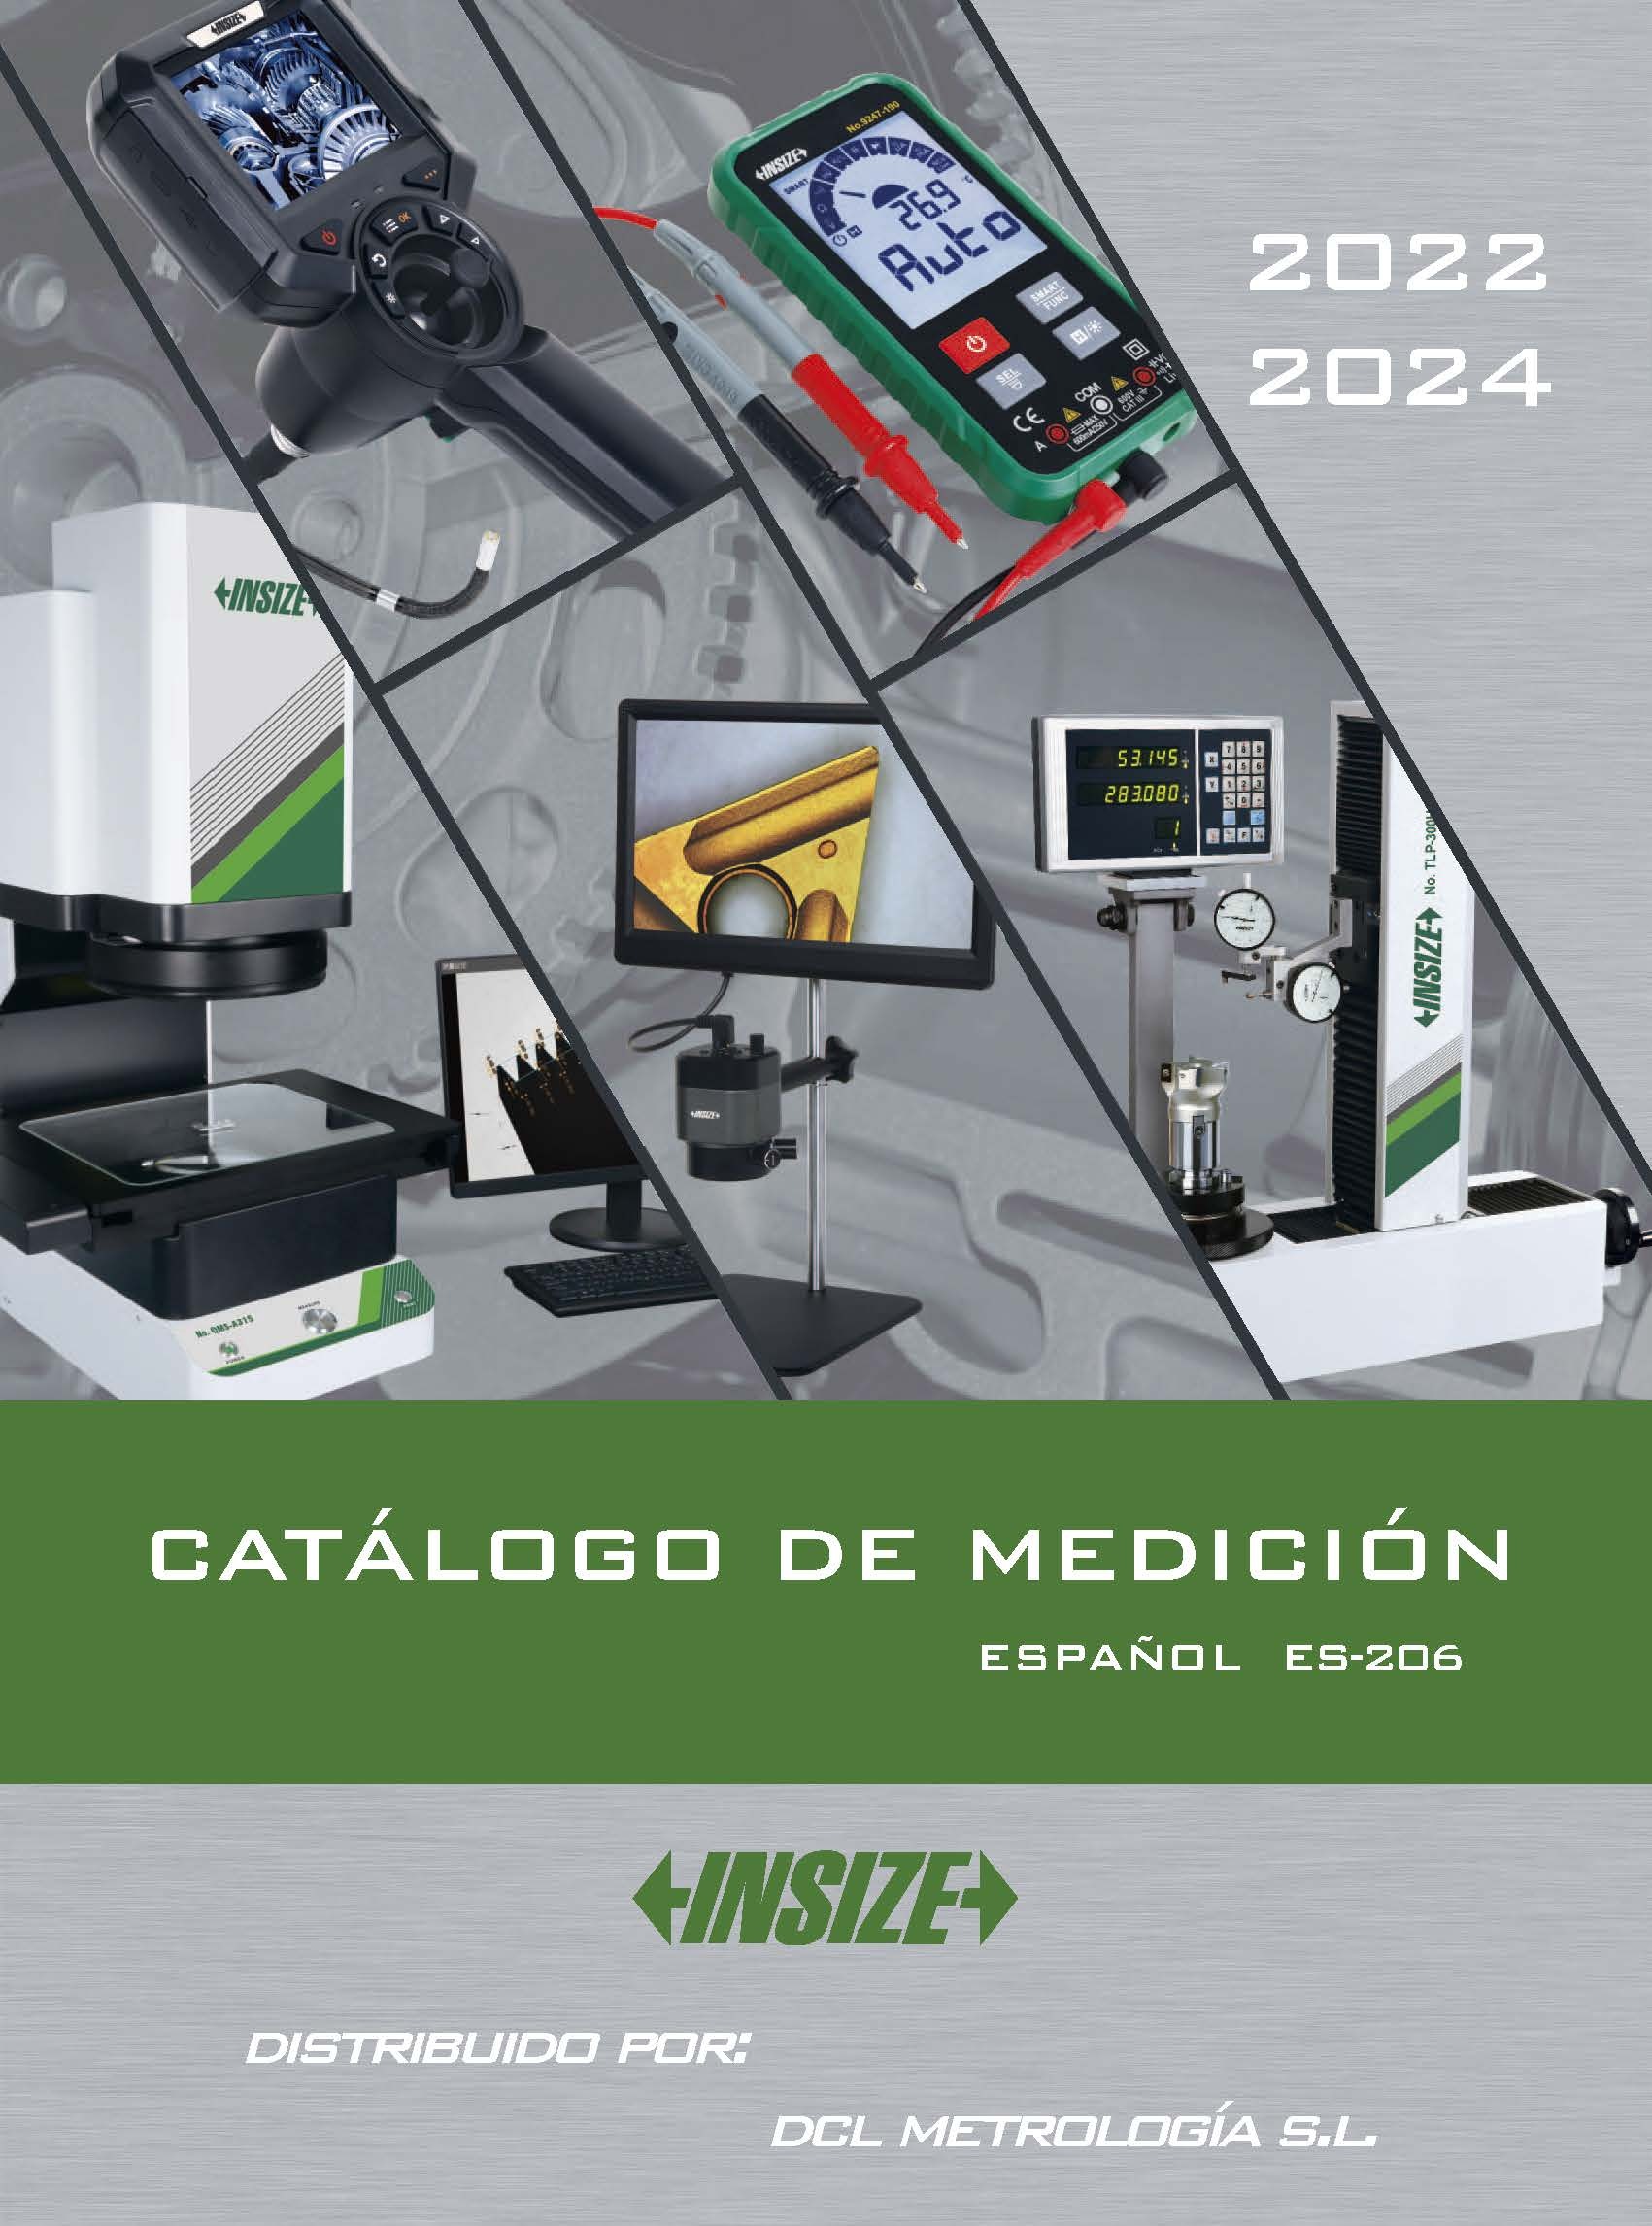 Catálogo Insize 2022-2024